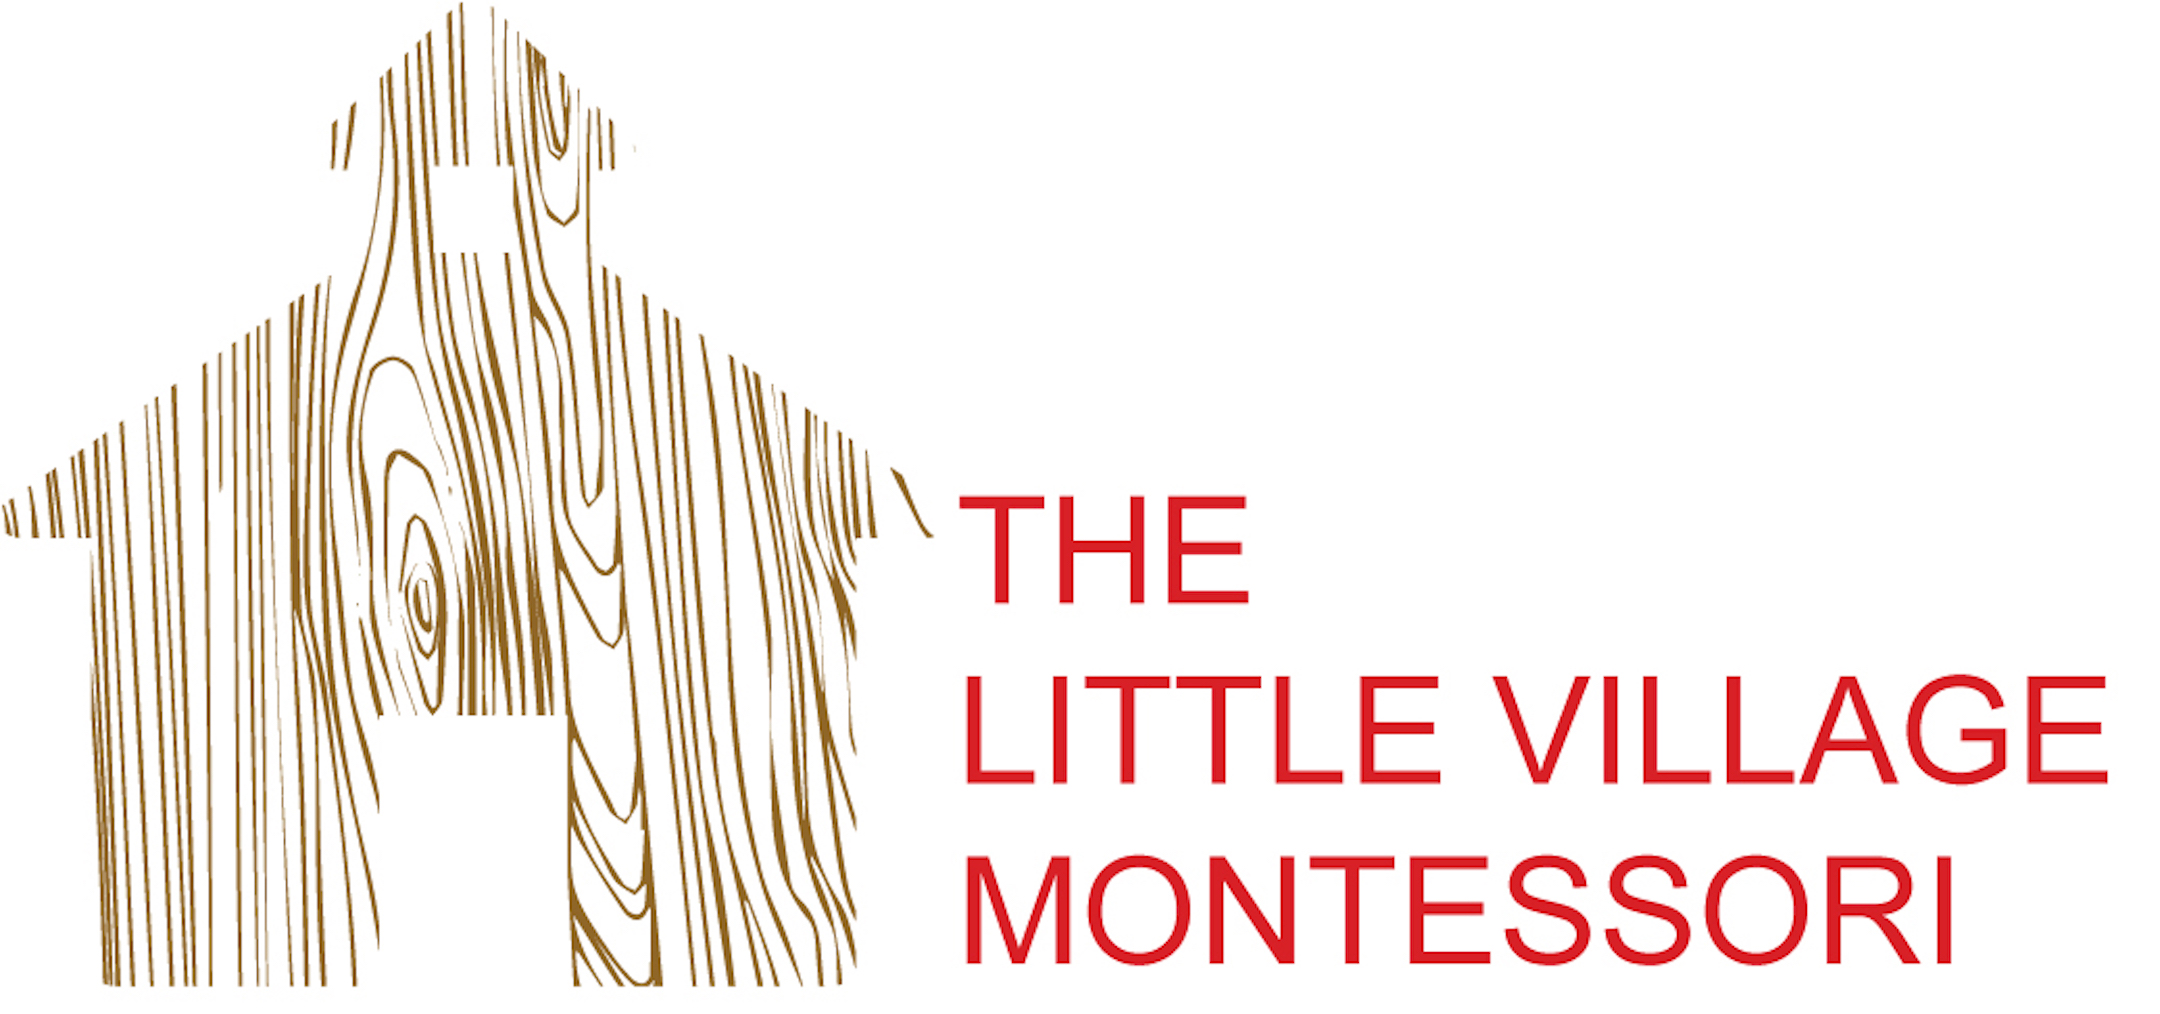 The Little Village Montessori School